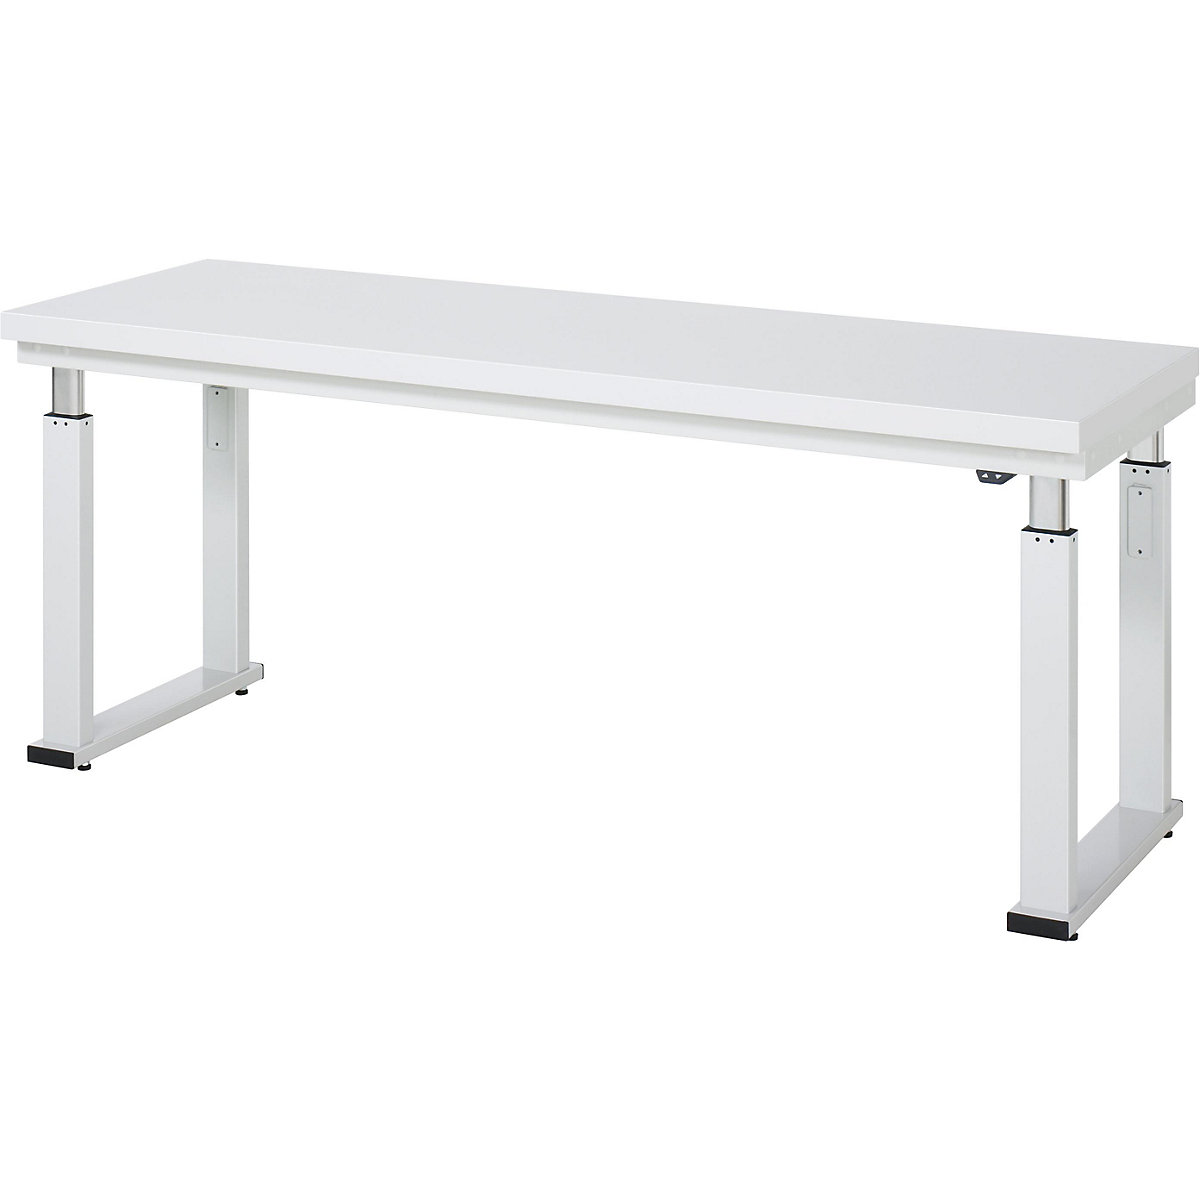 Psací stůl s elektrickým přestavováním výšky – RAU, deska z tvrdého laminátu, nosnost 600 kg, š x h 2000 x 700 mm-18